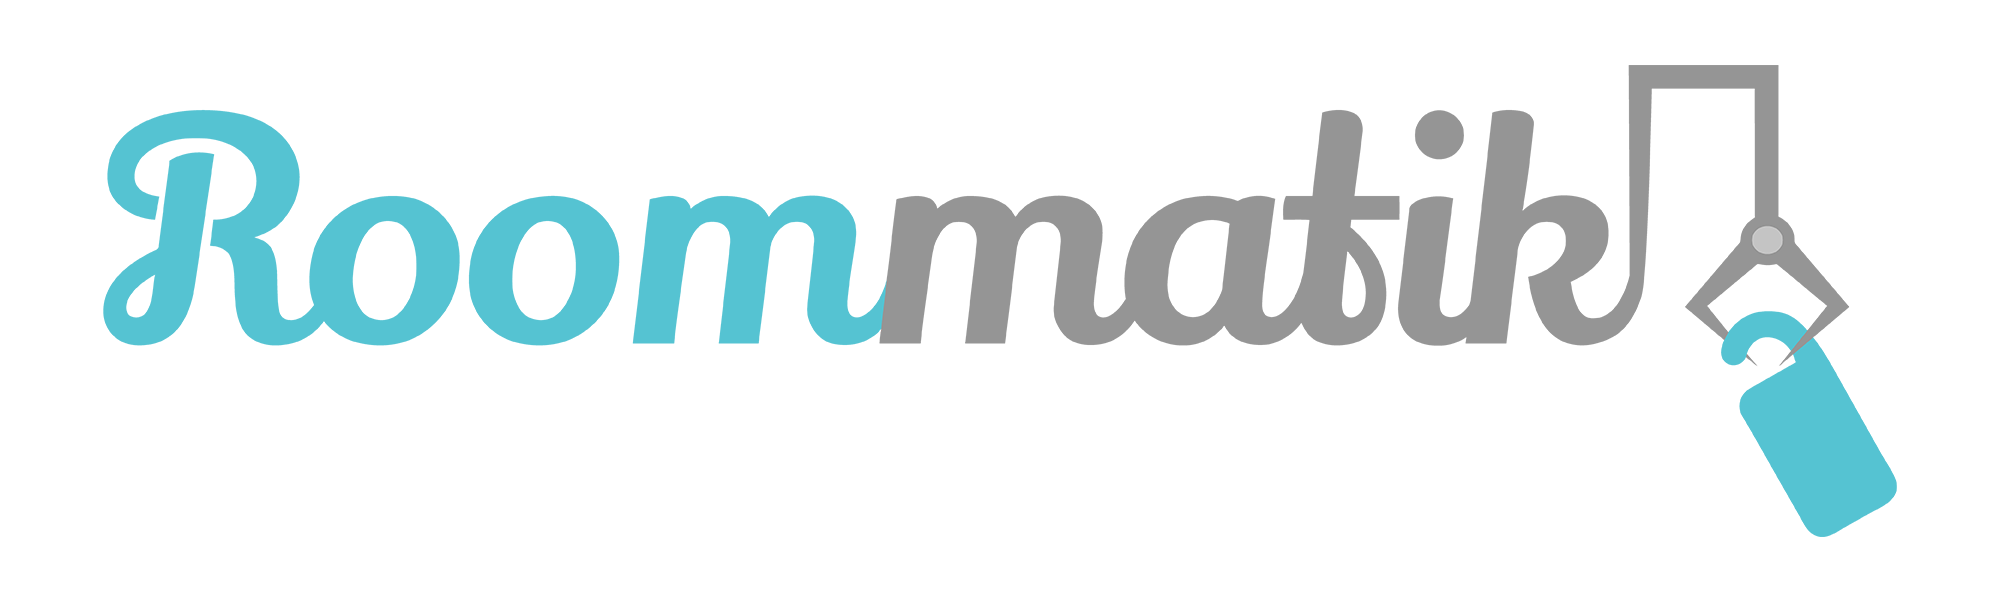 Roommatik-logo_2000x596